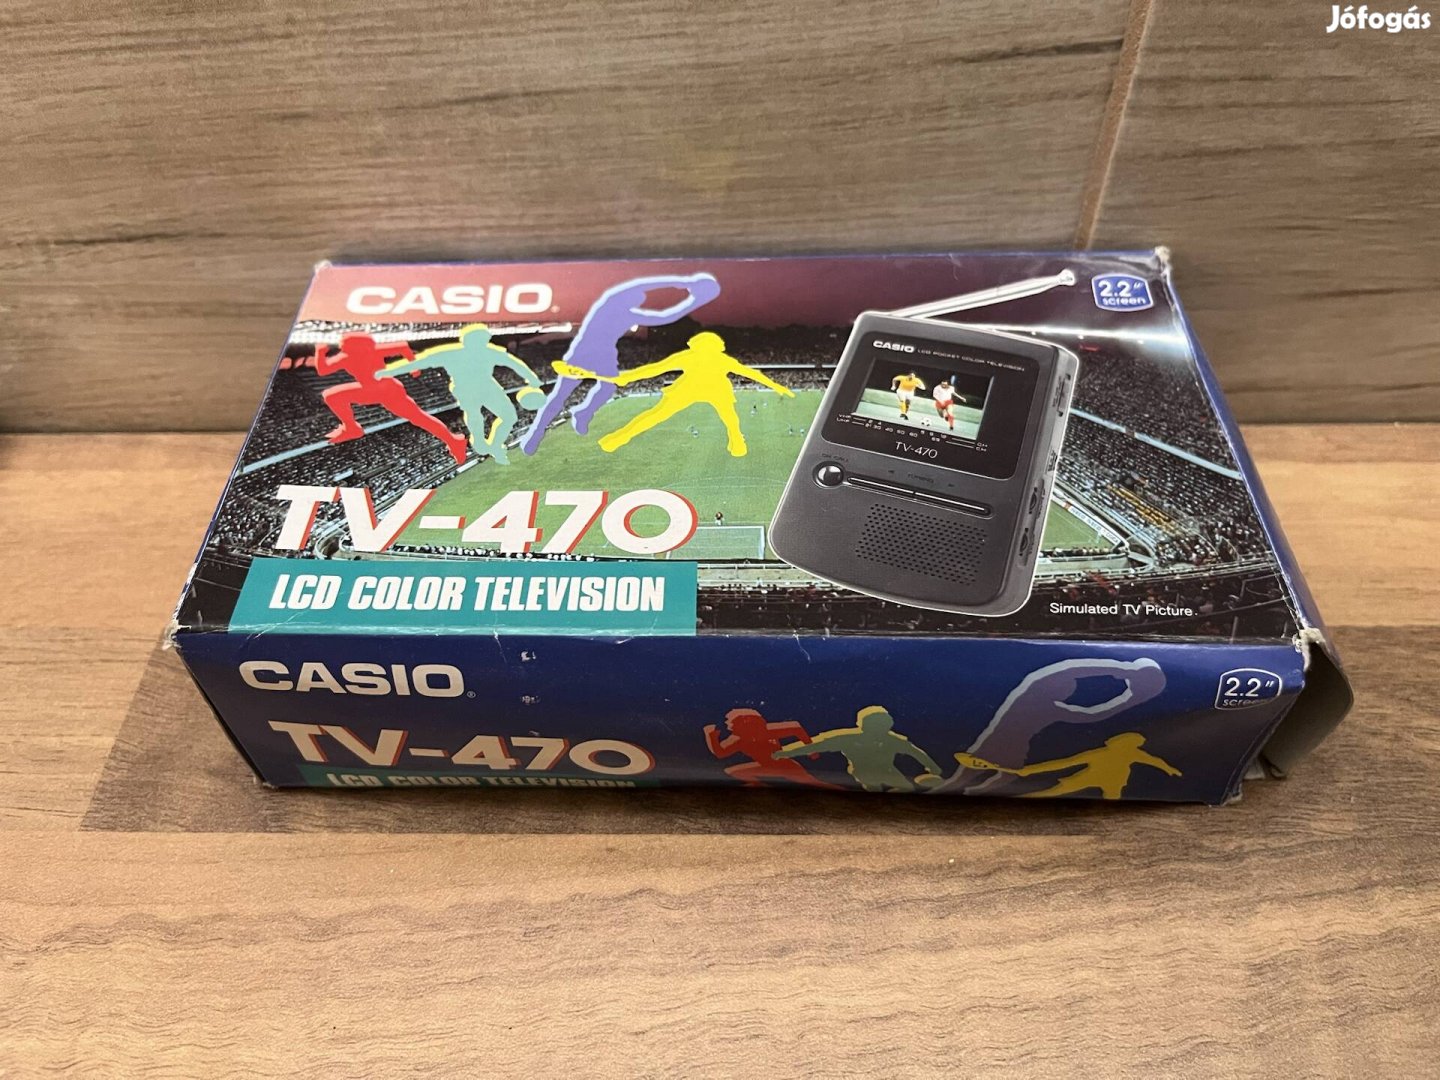 Casio tv-470